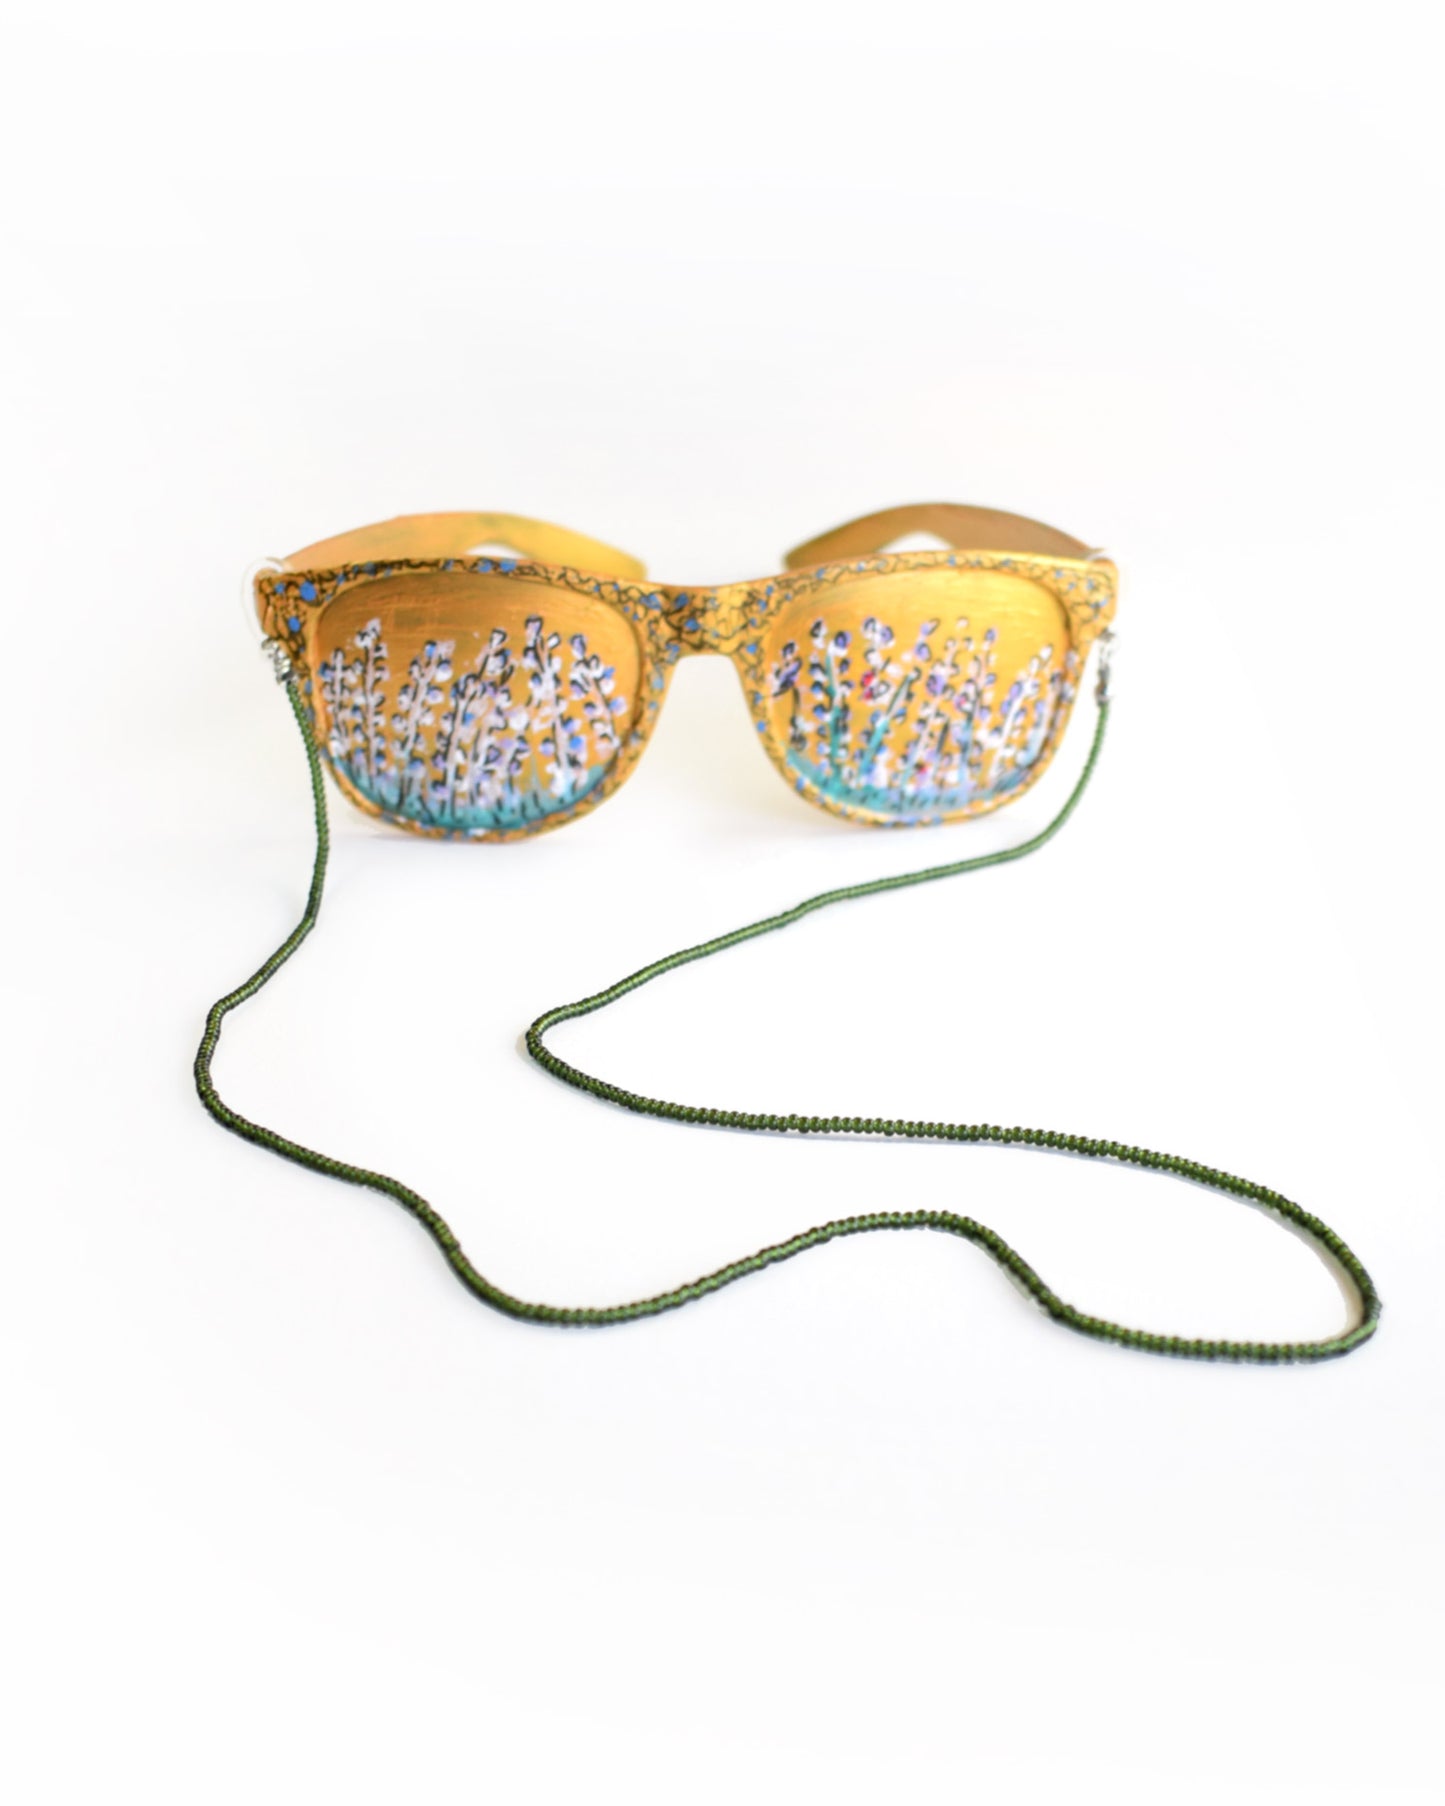 Acessórios de moda online - Loja de bijuterias Talai - Corrente de óculos de missangas verdes transparentes. Uma cor muito bonita para usar em qualquer altura do ano. Veja mais na nossa loja online e compre bijuteria a condizer.